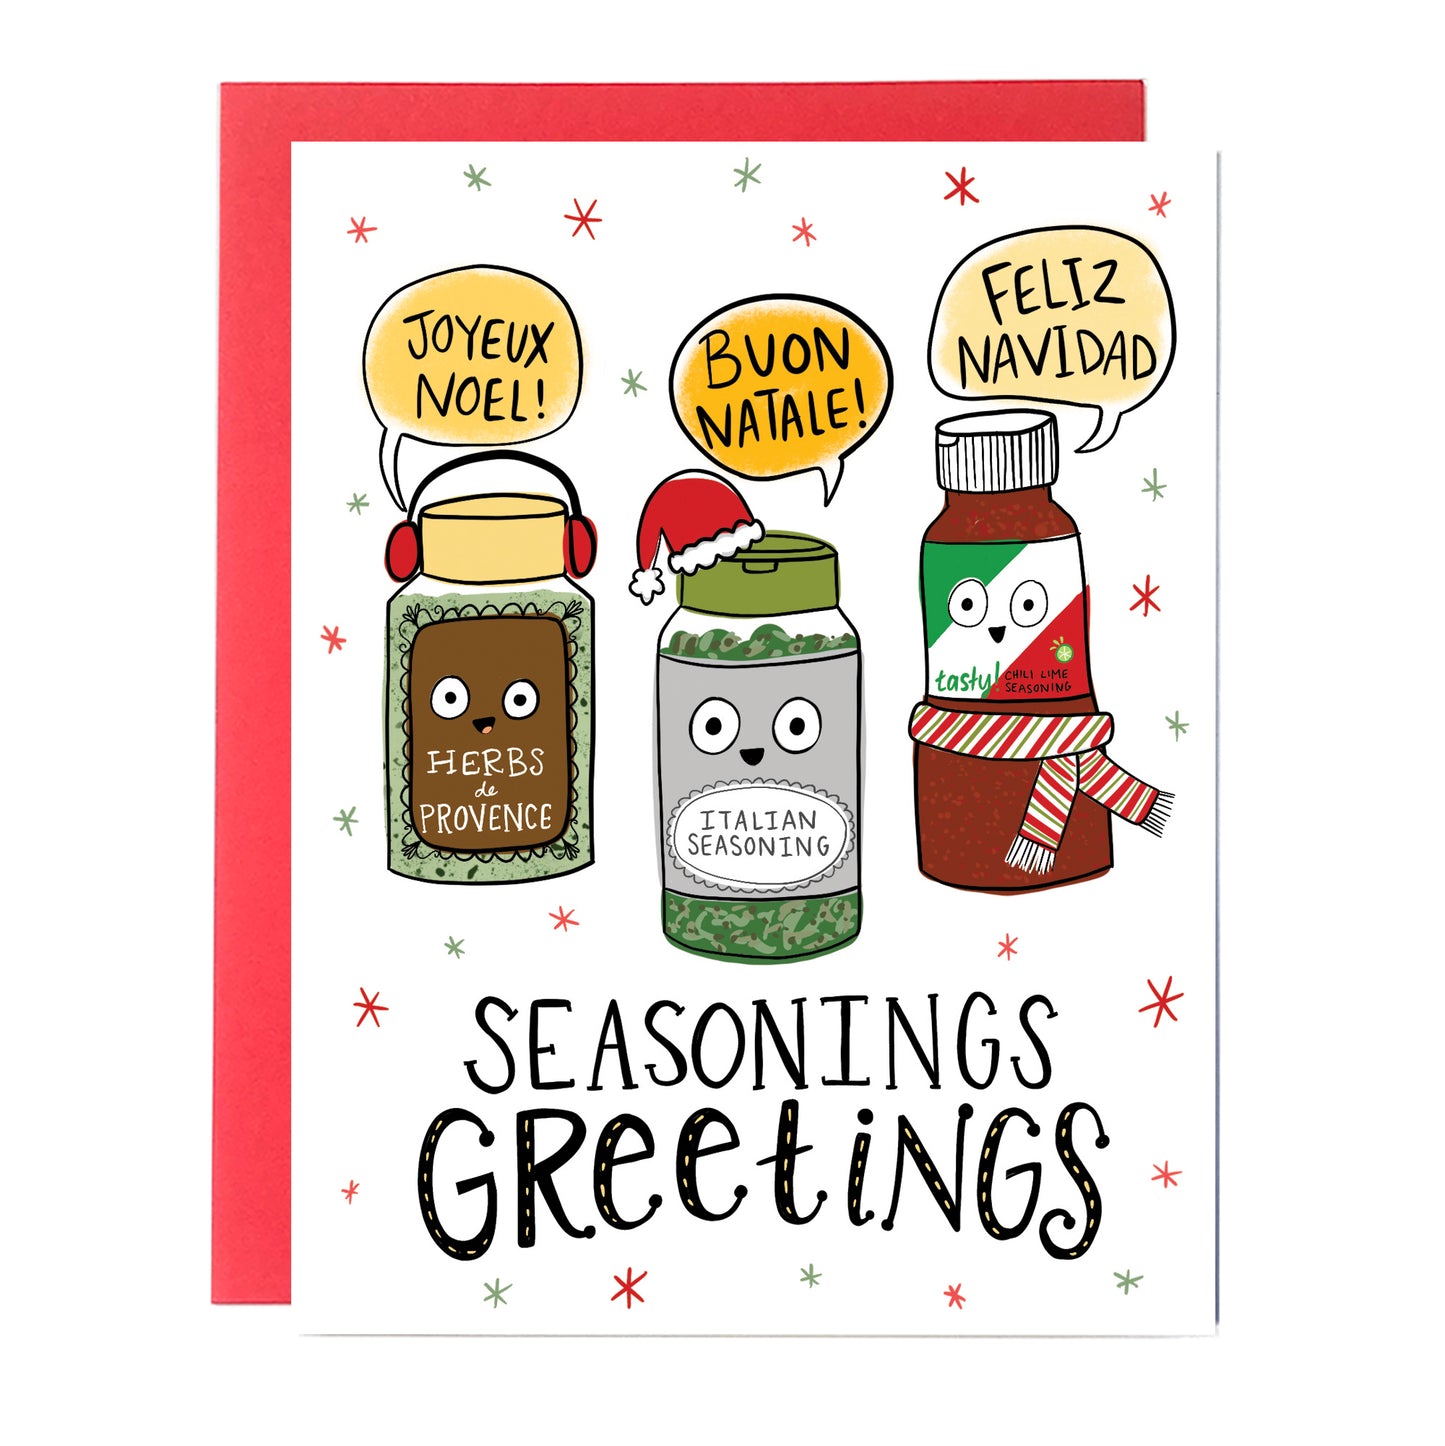 Seasonings Greetings Christmas Card